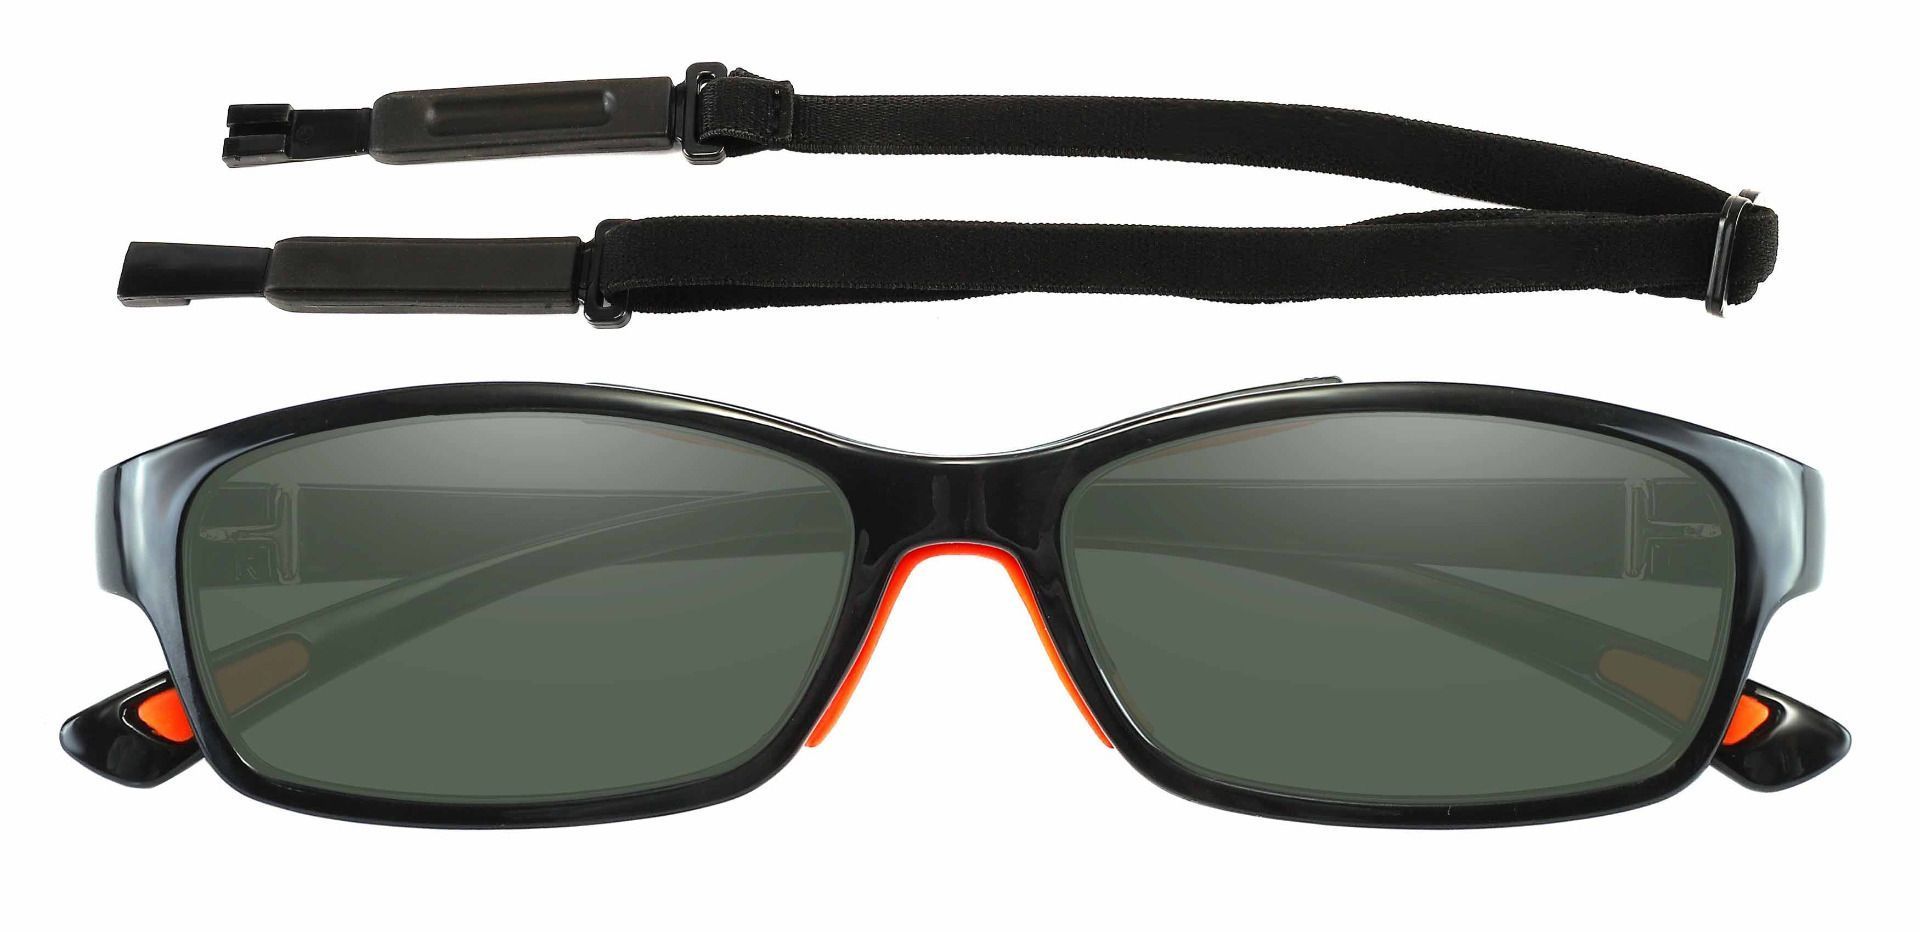 Glynn Rectangle Prescription Sunglasses - Black Frame With Green Lenses